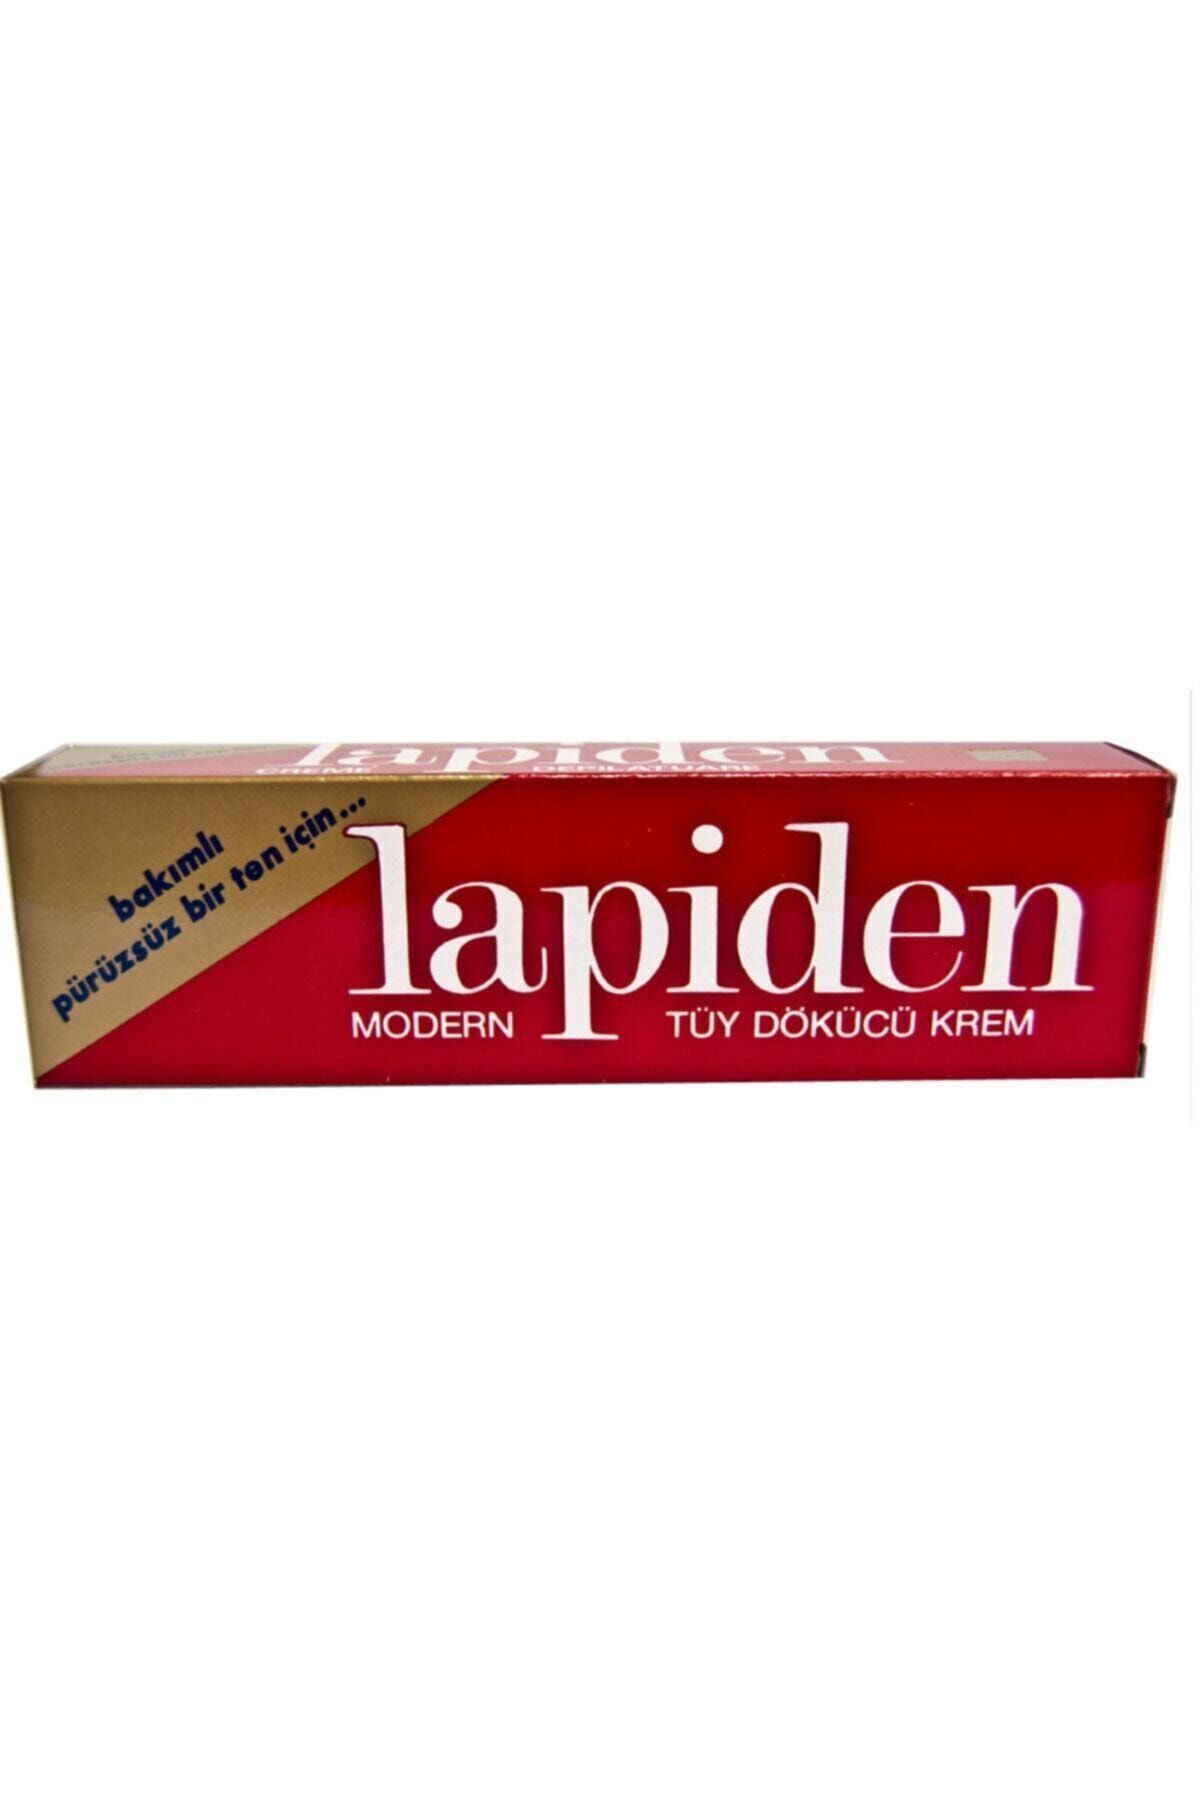 Lapiden Modern Tüy Dökücü Krem 40 gr